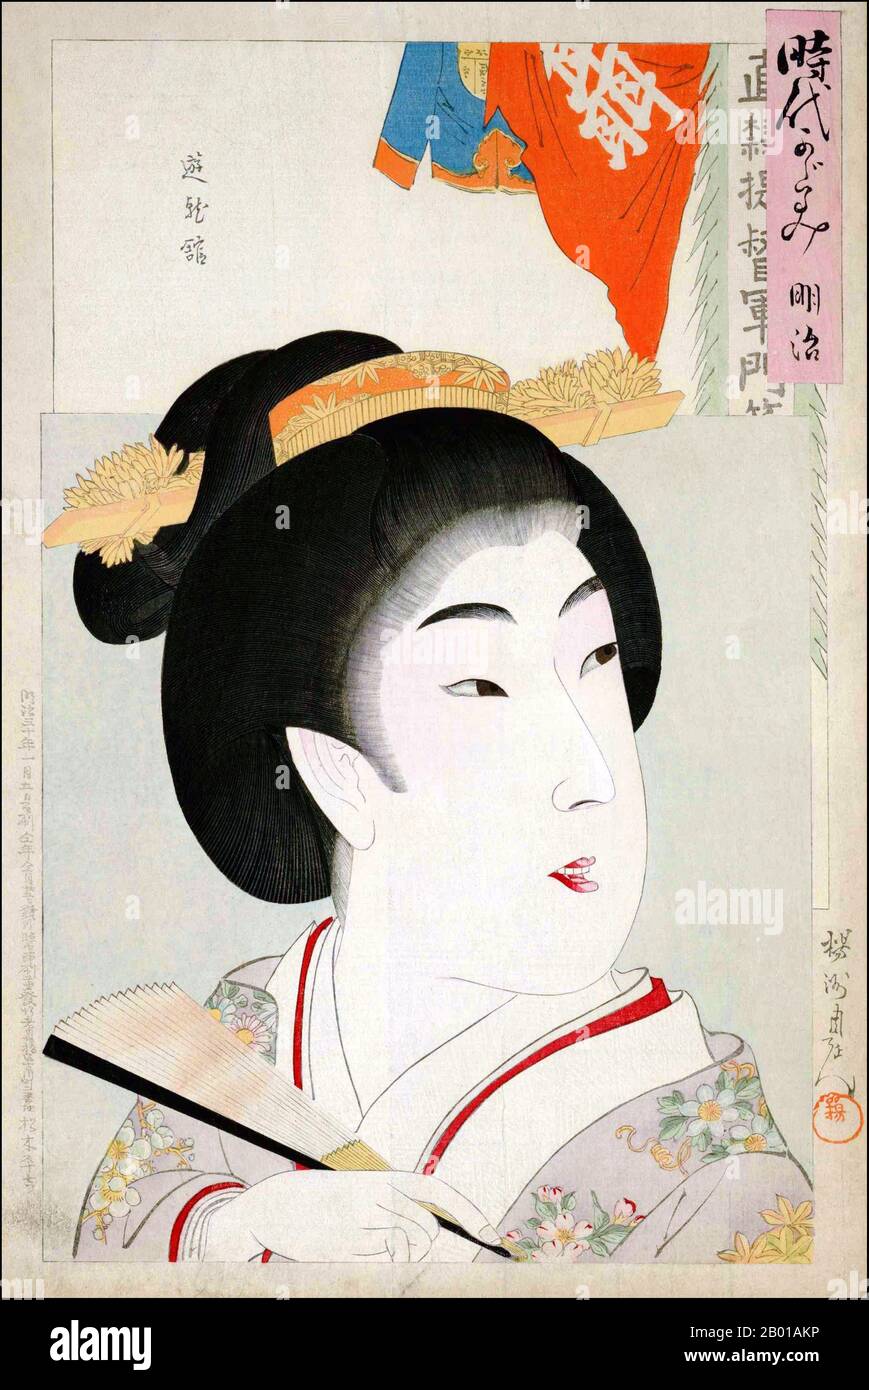 Japan: Porträt einer Schönheit (Bijinga). Ukiyo-e Holzschnitt von Toyohara Chikanobu (1838-1912), 1897. Toyoyaha Chikanobu, von seinen Altersgenossen auch Yoshu Chikanobu genannt, war während der Meiji-Ära ein produktiver Maler und Grafiker. Sein richtiger Name war Hashimoto Naoyoshi, und er diente zunächst als militärischer Halter für den Sakakibara-Clan und kämpfte mit Tokugawa-Loyalisten bis zu ihrer Niederlage und Kapitulation. Danach wurde er Künstler und studierte bei verschiedenen Lehrern. Er war vor allem für seine Bijinga-Drucke bekannt. Bijinga ist ein Oberbegriff für Bilder schöner Frauen in der japanischen Kunst Stockfoto